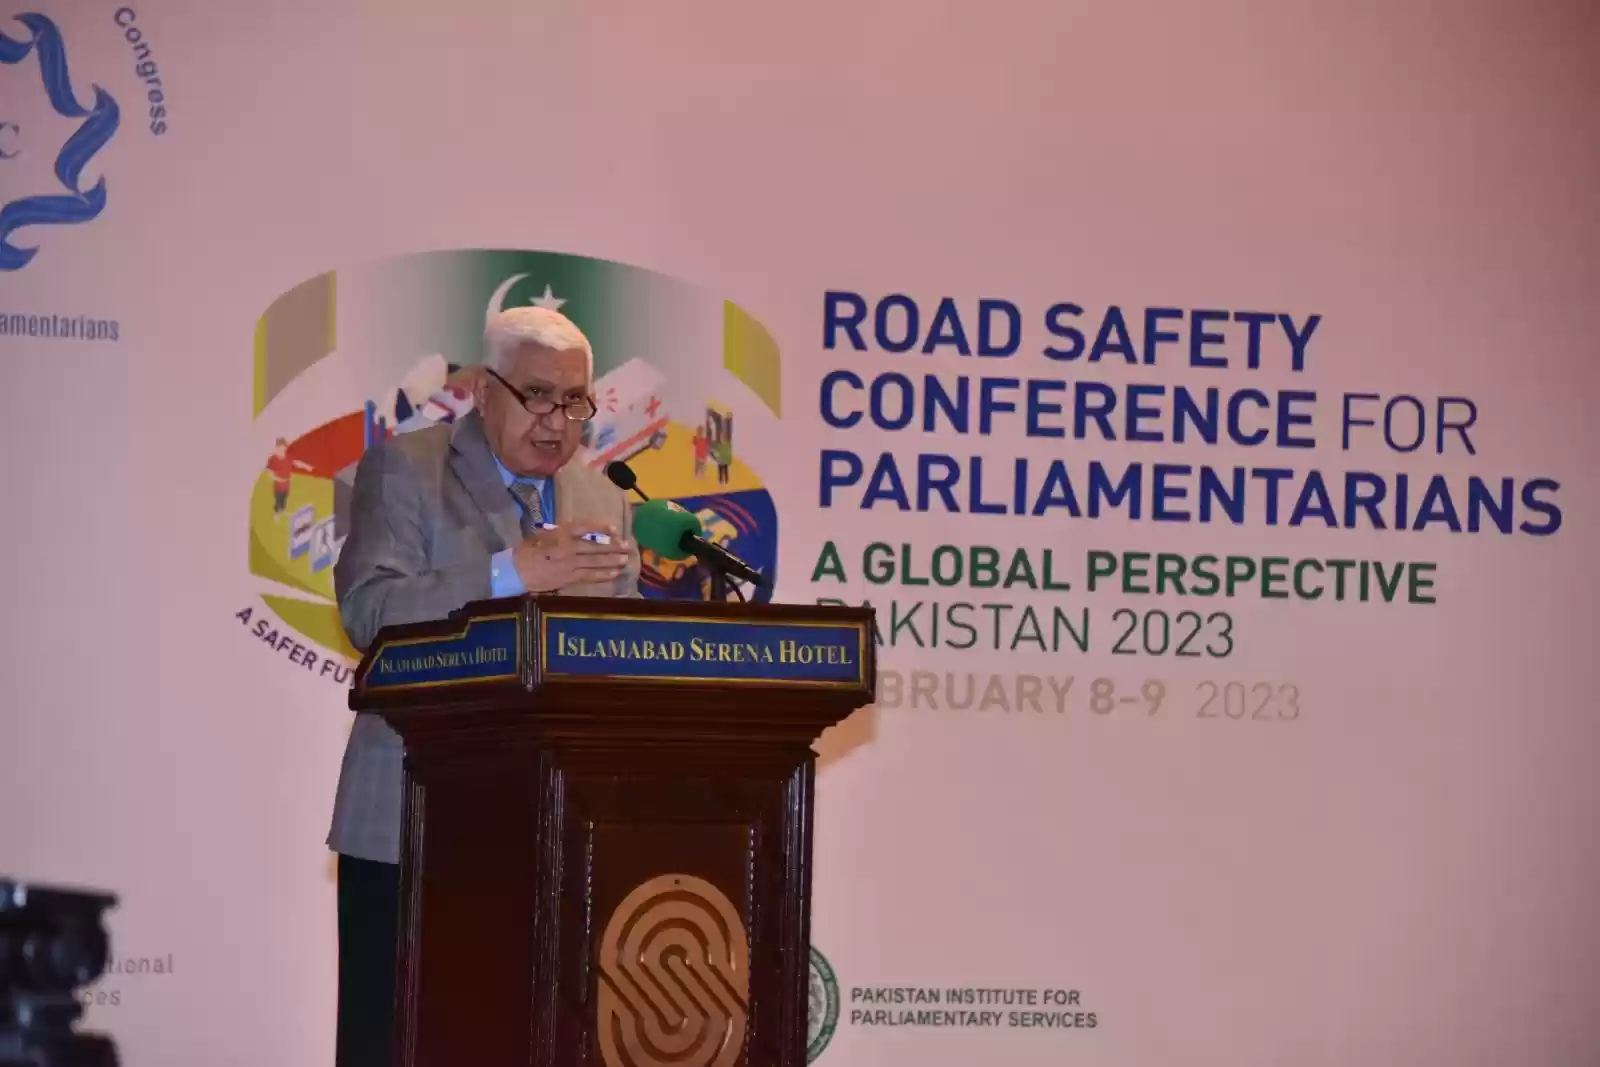 نائب أردني يُشارك بمؤتمر سلامة الطريق في باكستان